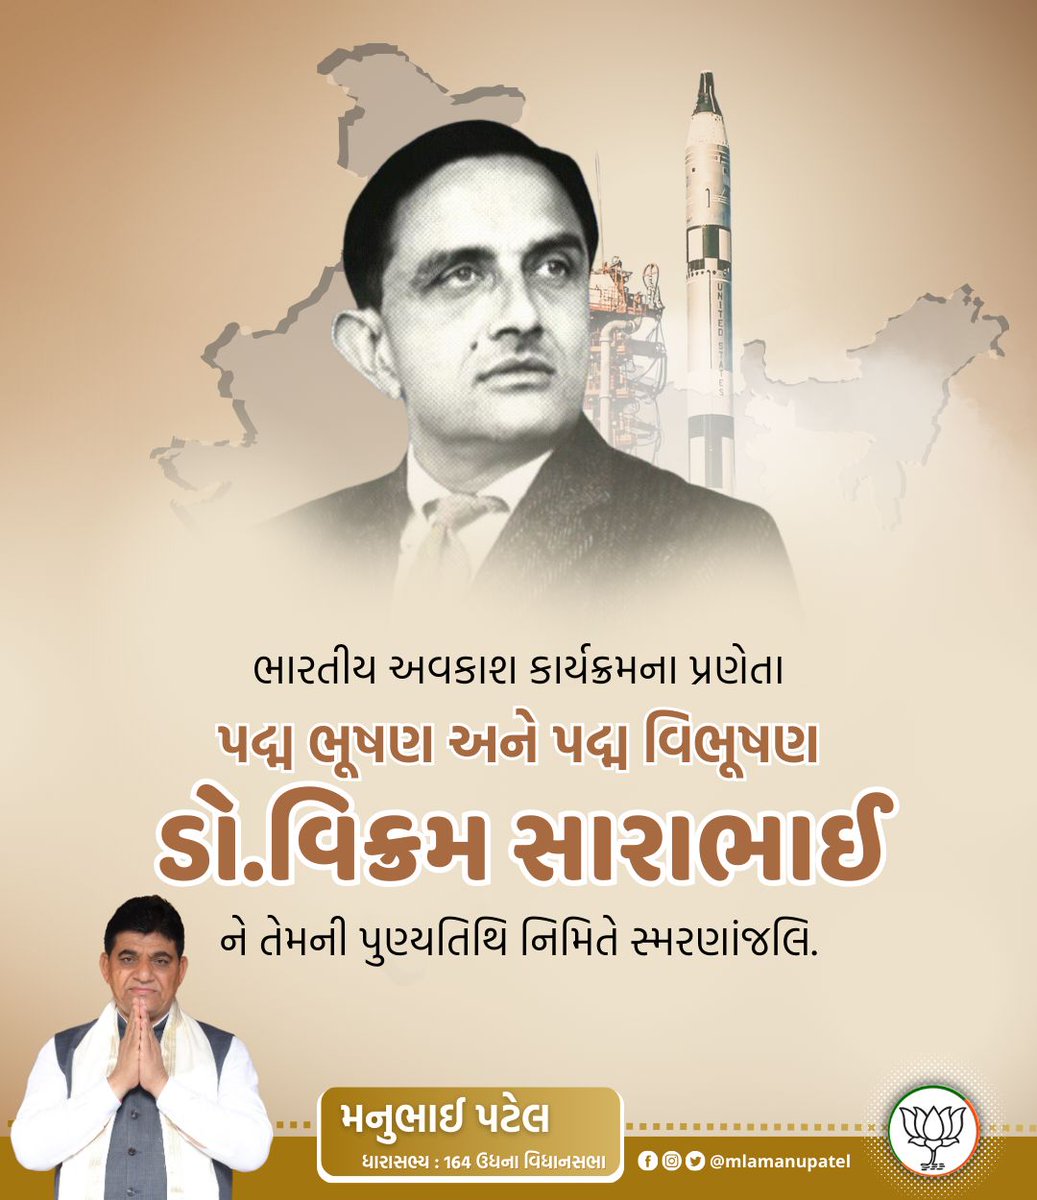 भारतीय अंतरिक्ष कार्यक्रम के जनक, महान वैज्ञानिक पद्म विभूषण डॉ. विक्रम साराभाई जी के स्मृति दिवस पर उन्हें विनम्र श्रद्धांजलि ।🙏🏻

#DrVikramSarabhai 
#डॉ_विक्रम_साराभाई